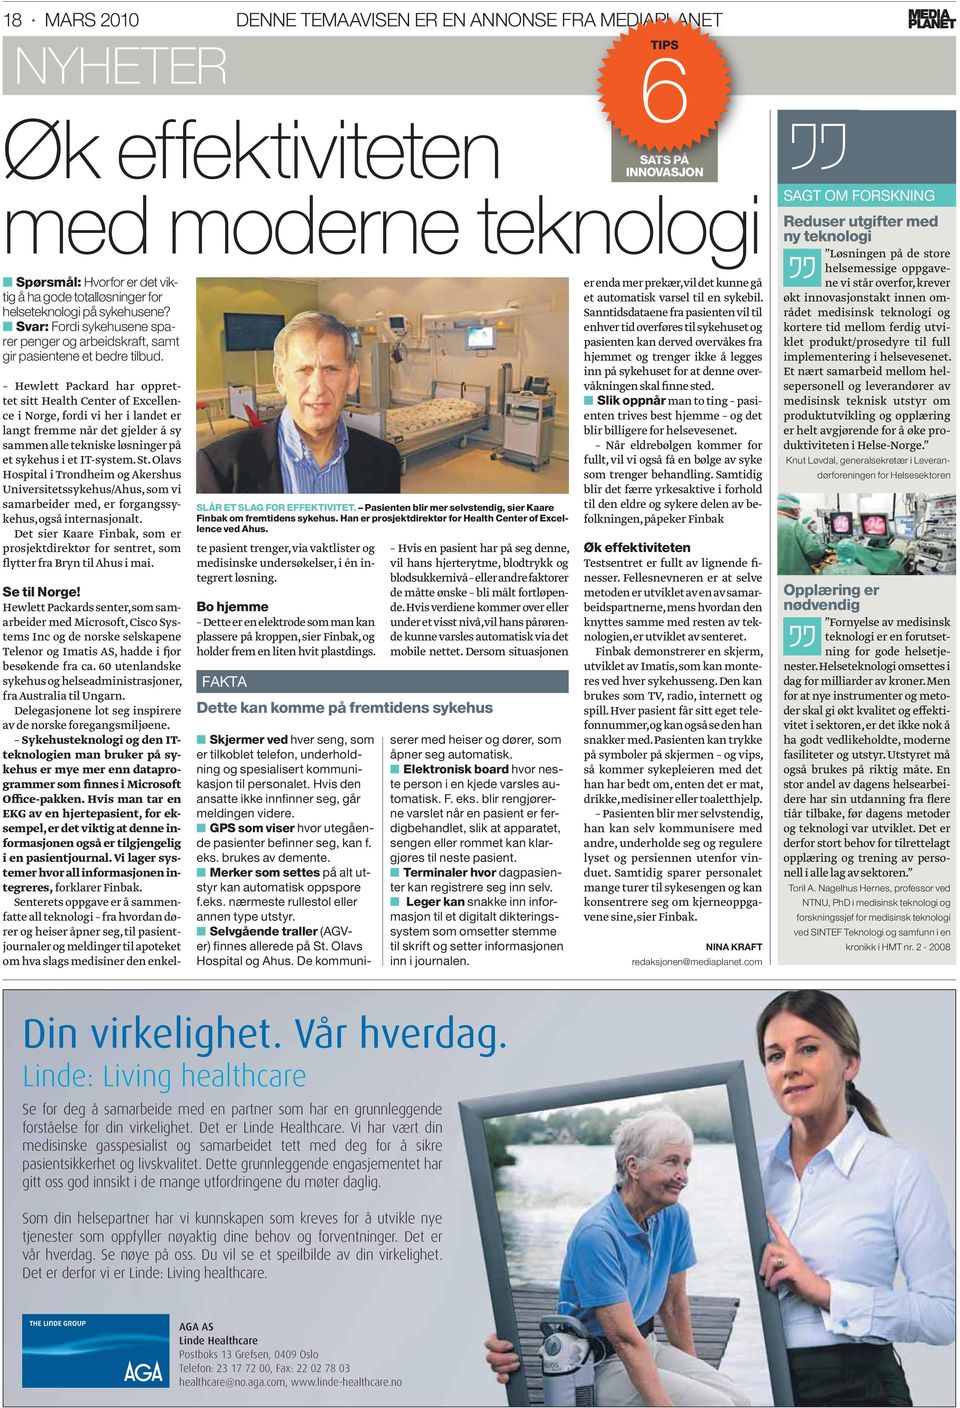 Hewlett Packard har opprettet sitt Health Center of Excellence i Norge, fordi vi her i landet er langt fremme når det gjelder å sy sammen alle tekniske løsninger på et sykehus i et IT-system. St.